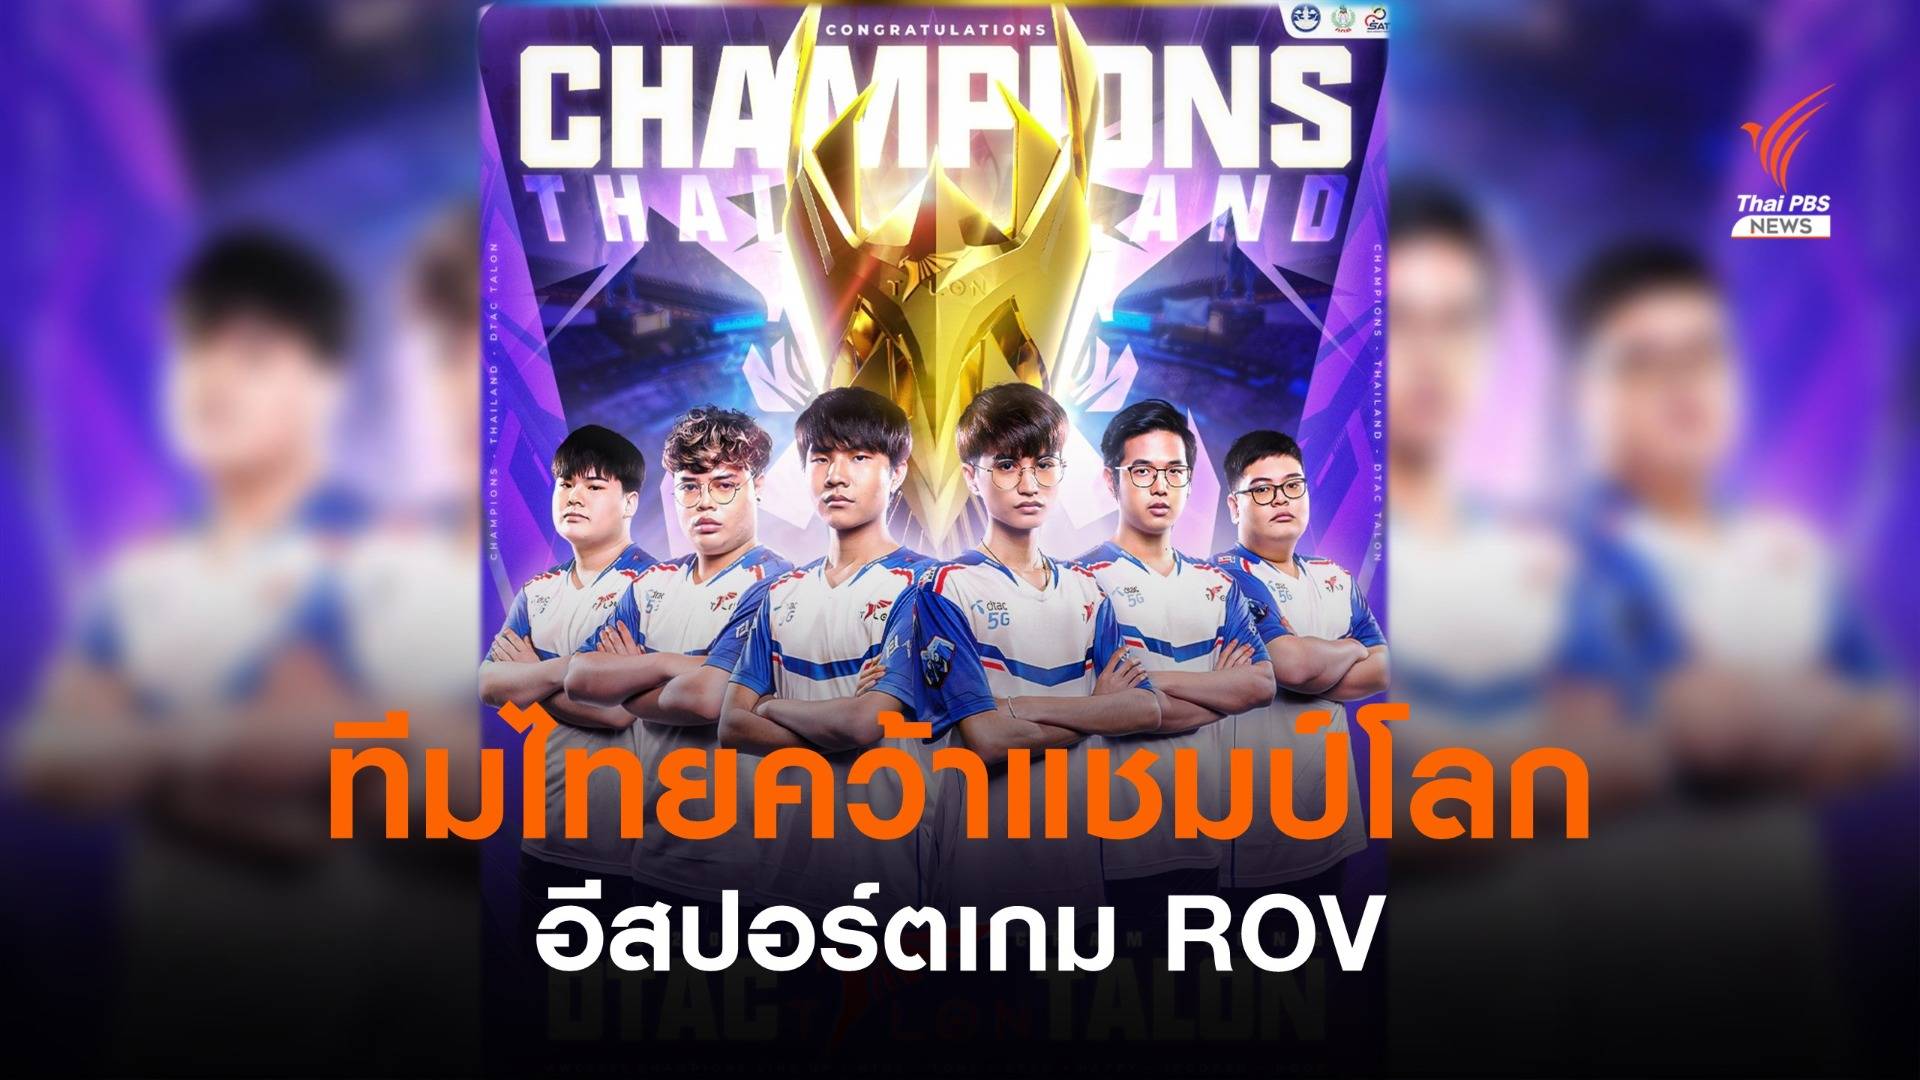 ทีมไทยเจ๋ง! คว้าแชมป์โลก AWC 2021 อีสปอร์ตเกม ROV  